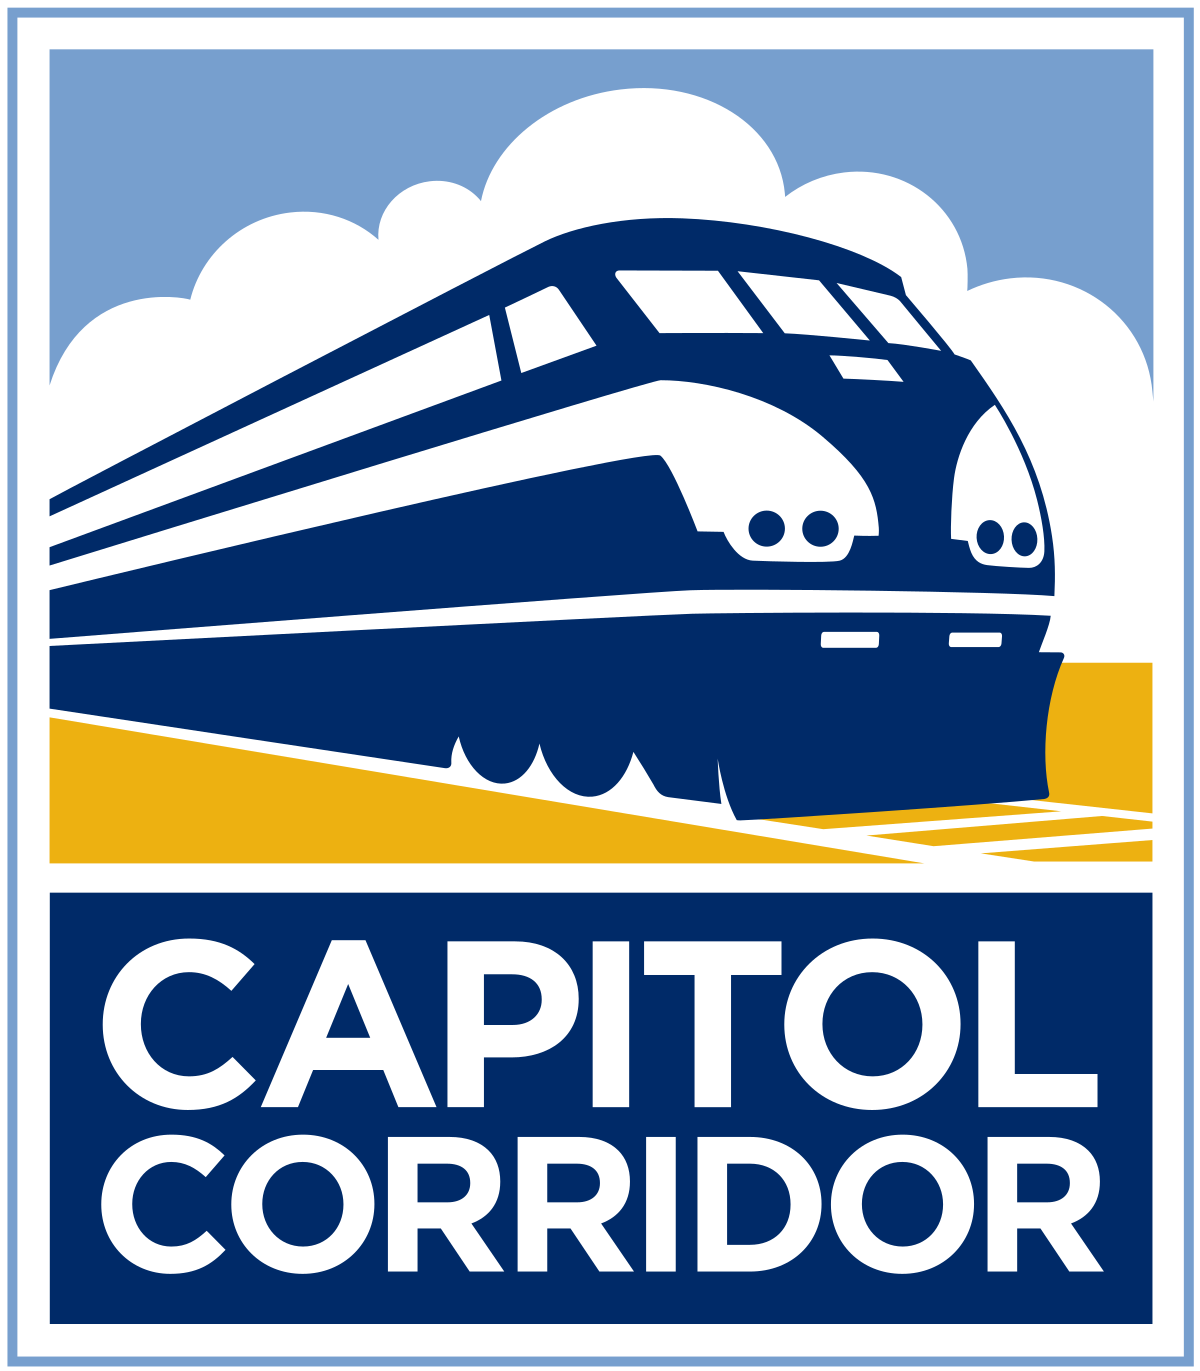 Capitol Corridors Logos